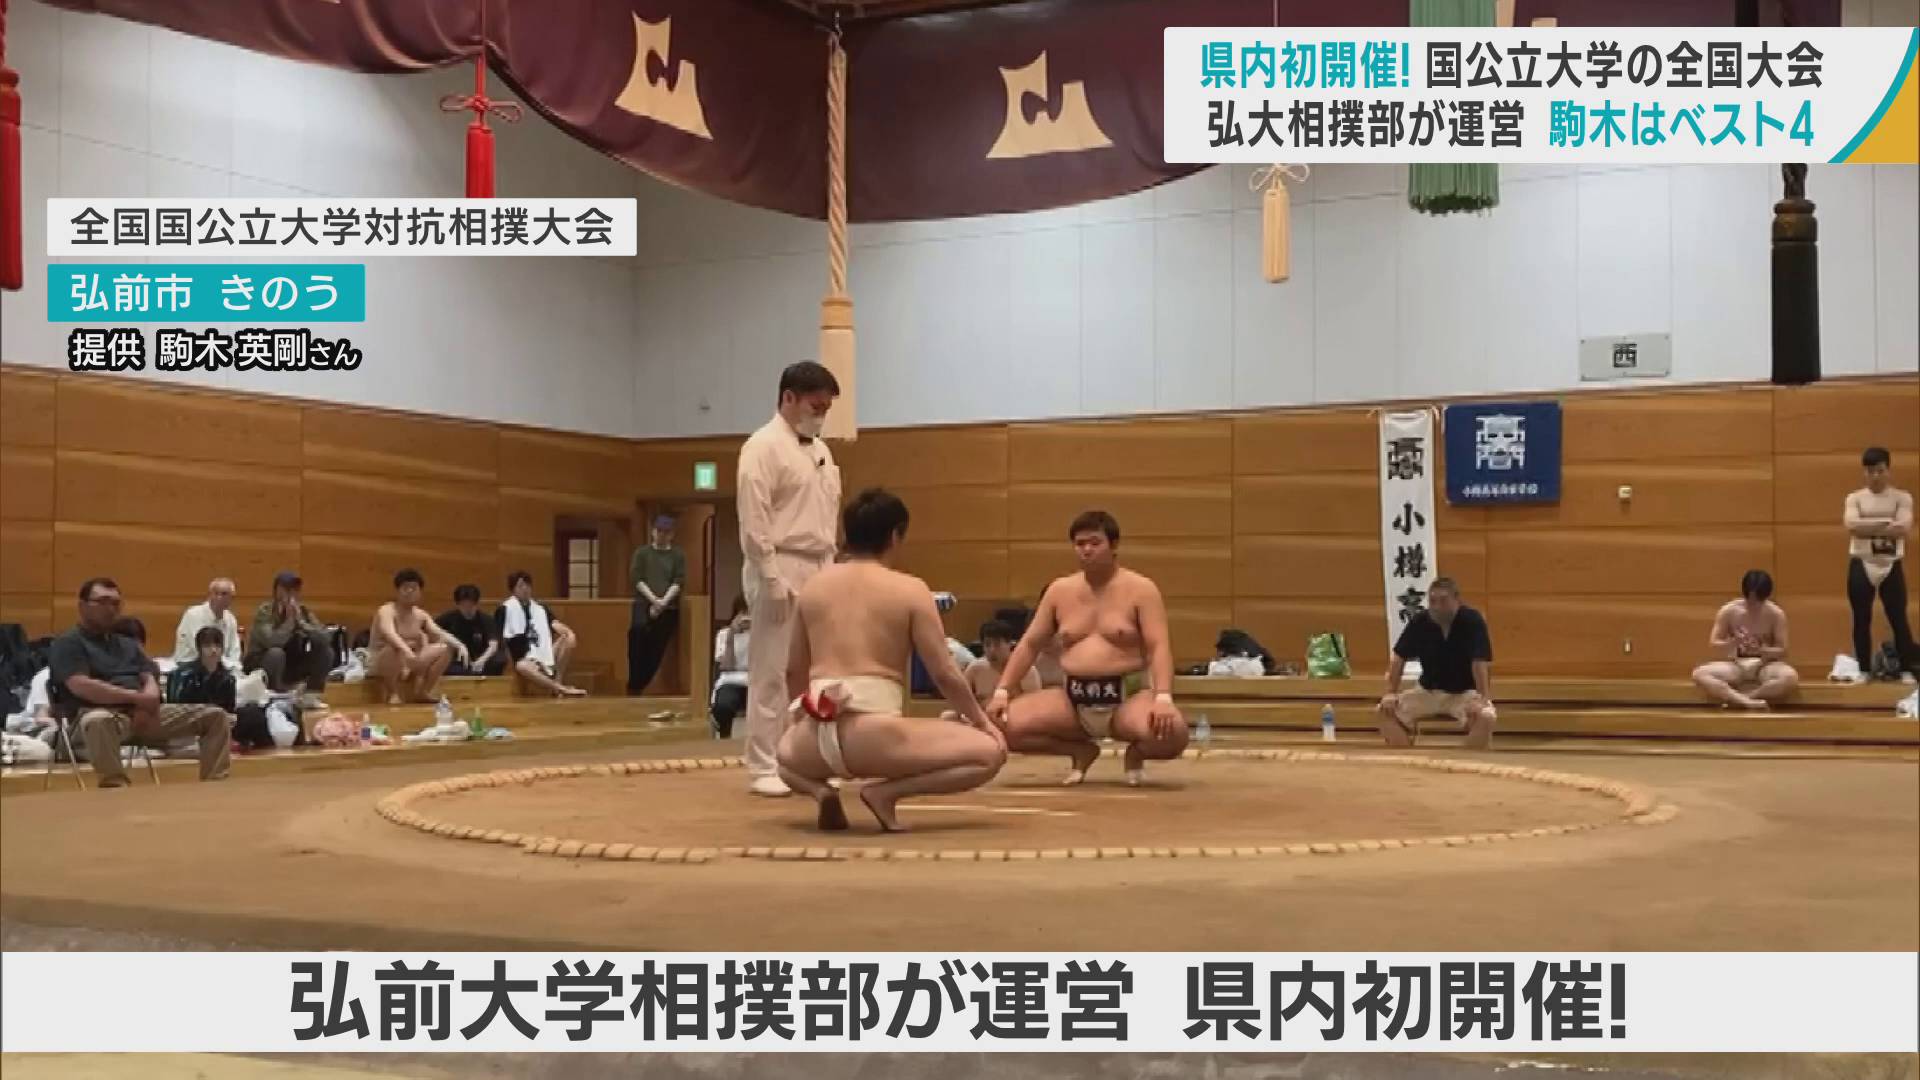 頑張っています！弘大相撲部　国公立大学の全国大会を青森県内で初開催